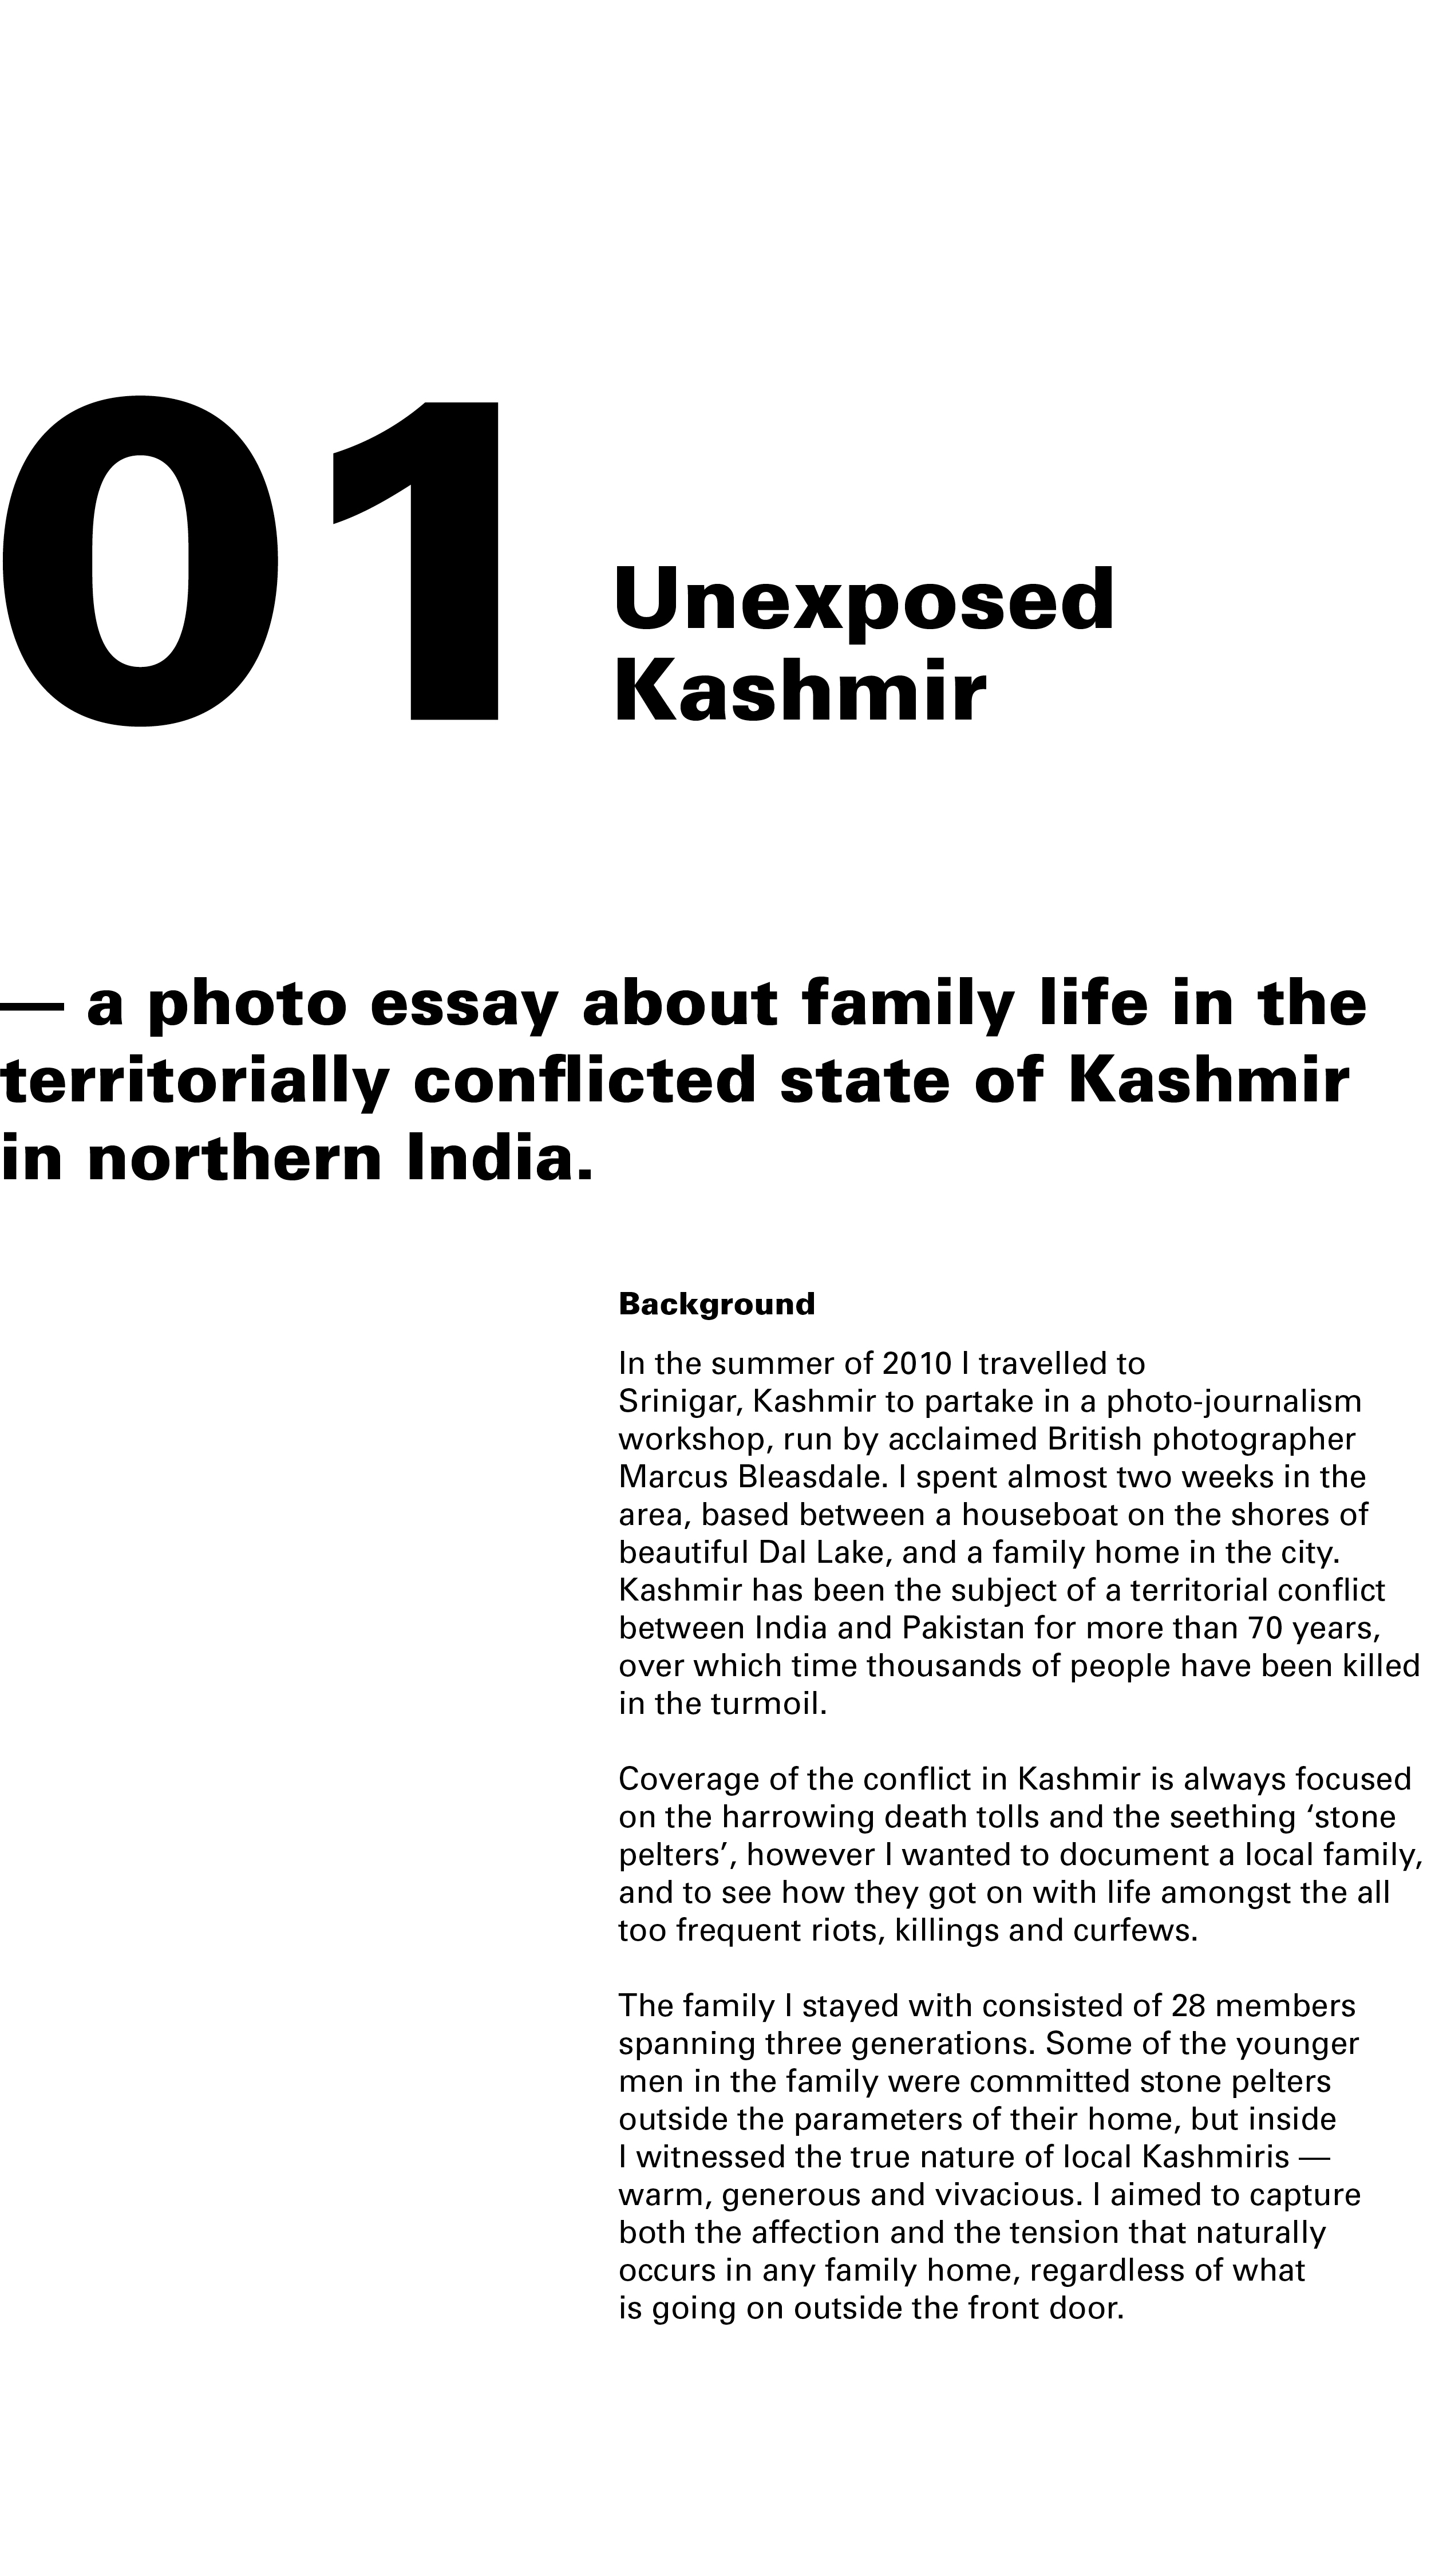 Unexposed_Kashmir_Text.jpg